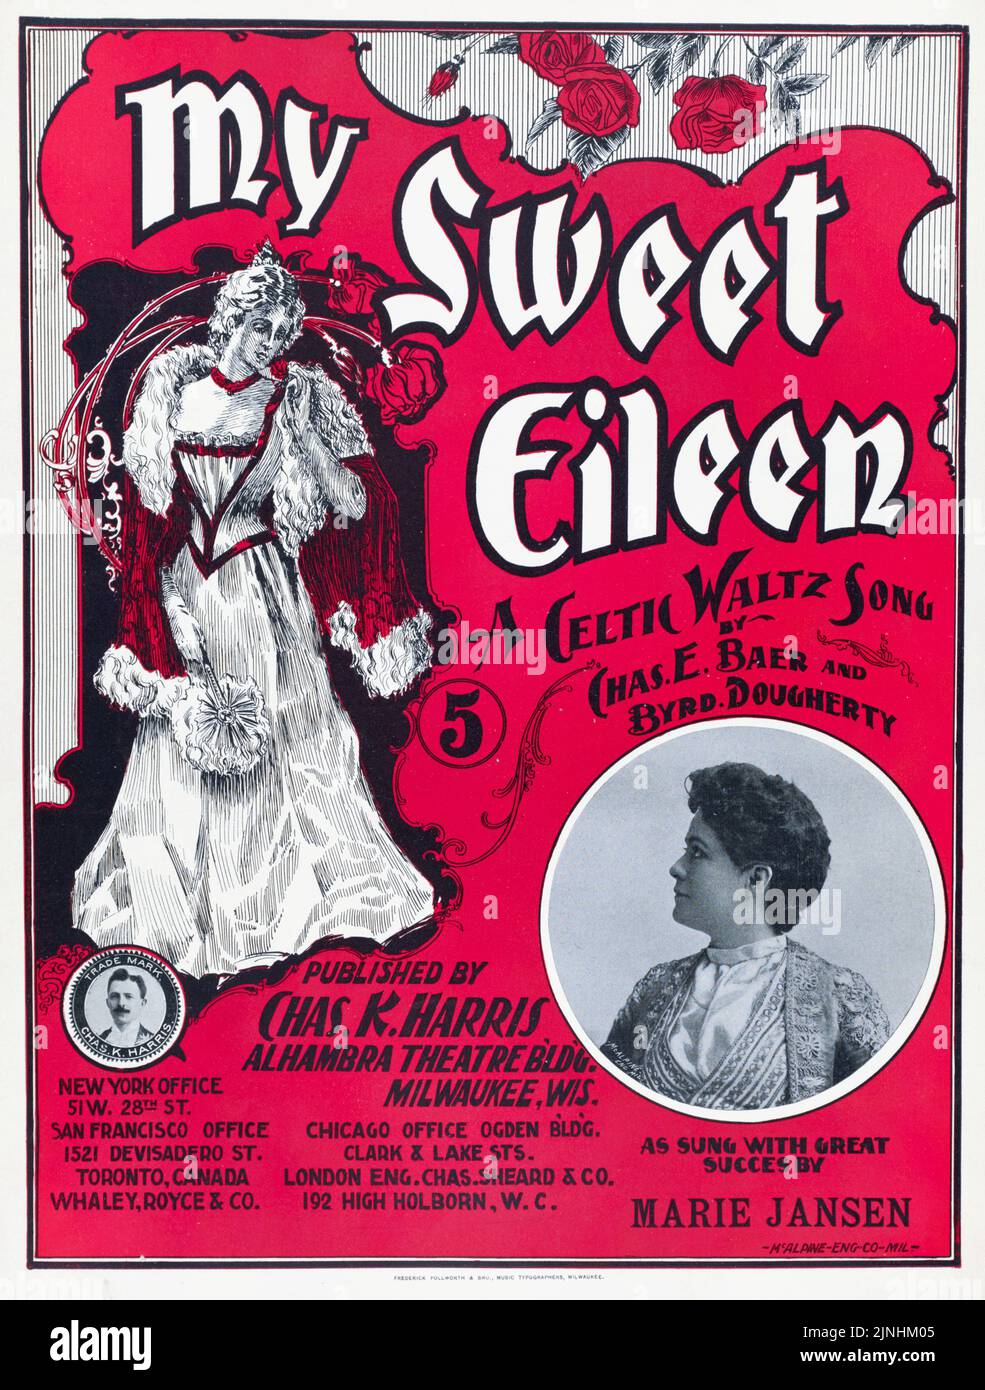 My Sweet Eileen (1898) Una canzone Celtic Waltz, di Charles E. Baer e Byrd Dougherty, pubblicata da Charles K. Harris, cantata da Marie Jansen. Copertina per musica spartiti. Foto Stock